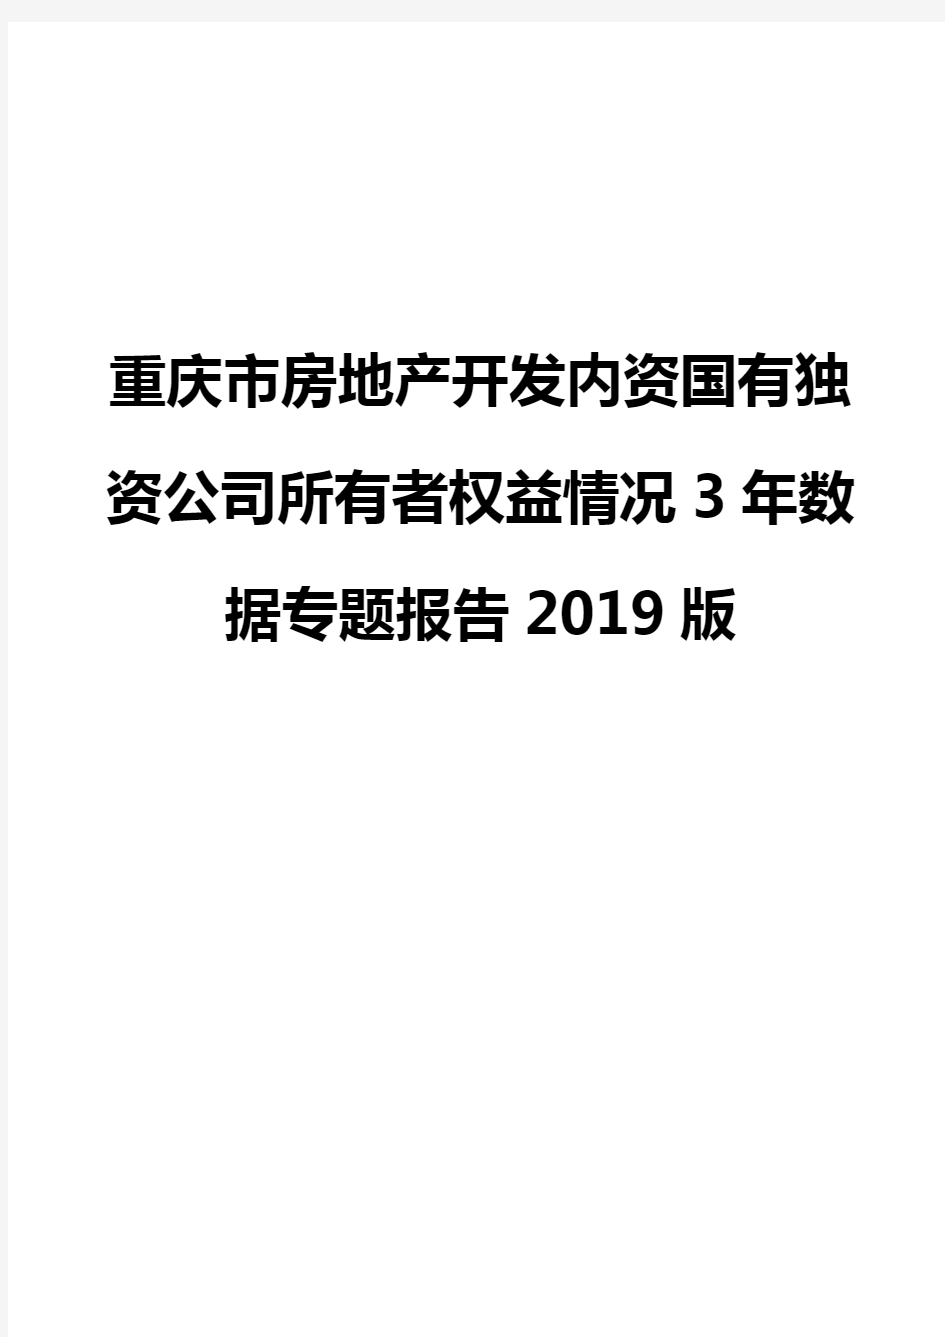 重庆市房地产开发内资国有独资公司所有者权益情况3年数据专题报告2019版